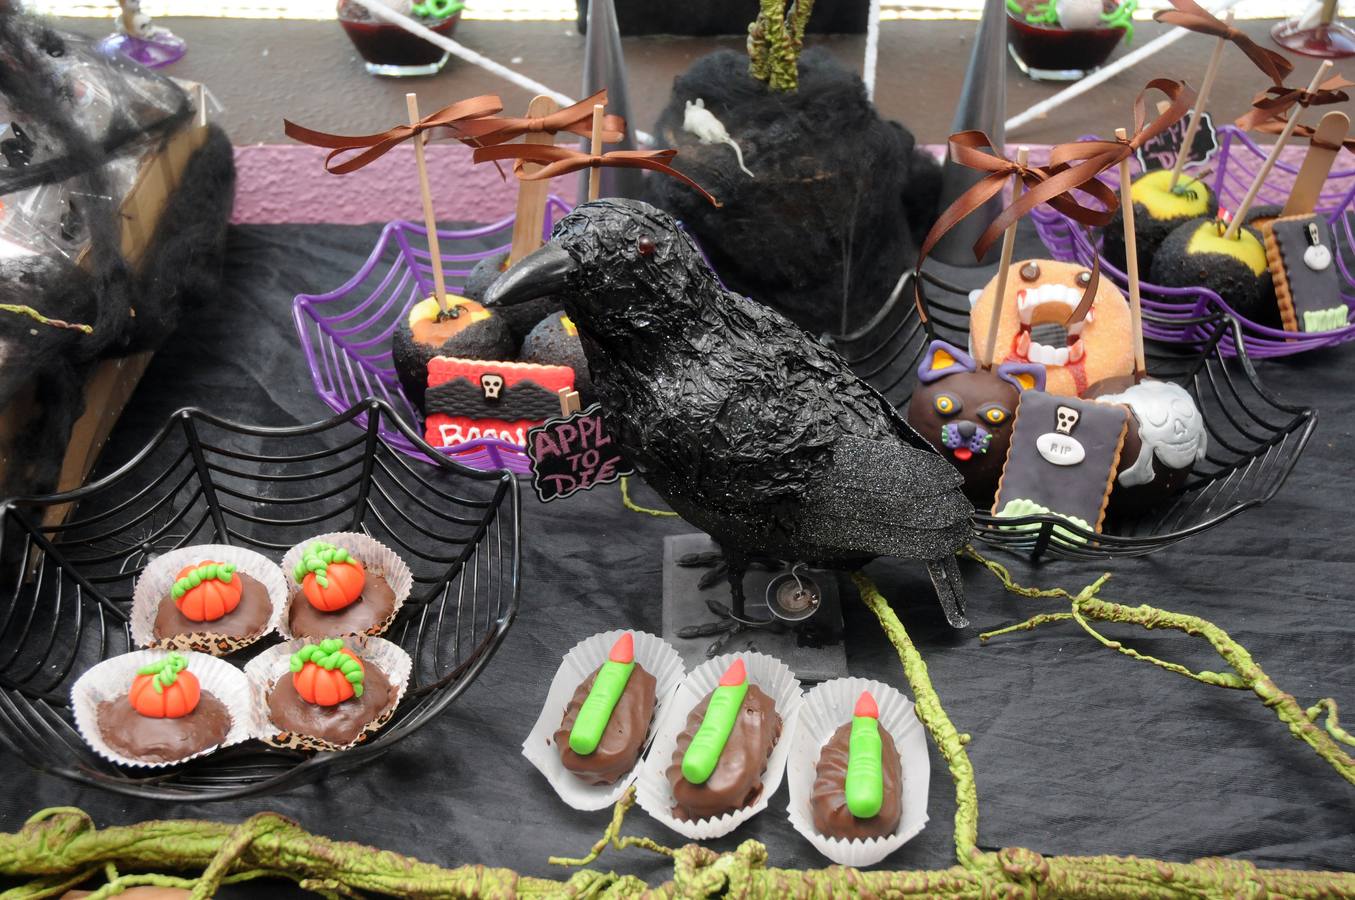 La pastelería Glassé de Mérida ha creado una línea de dulces para Halloween. Una tradicion de influencia norteamericana que se afianza con los años en nuestra tierra.